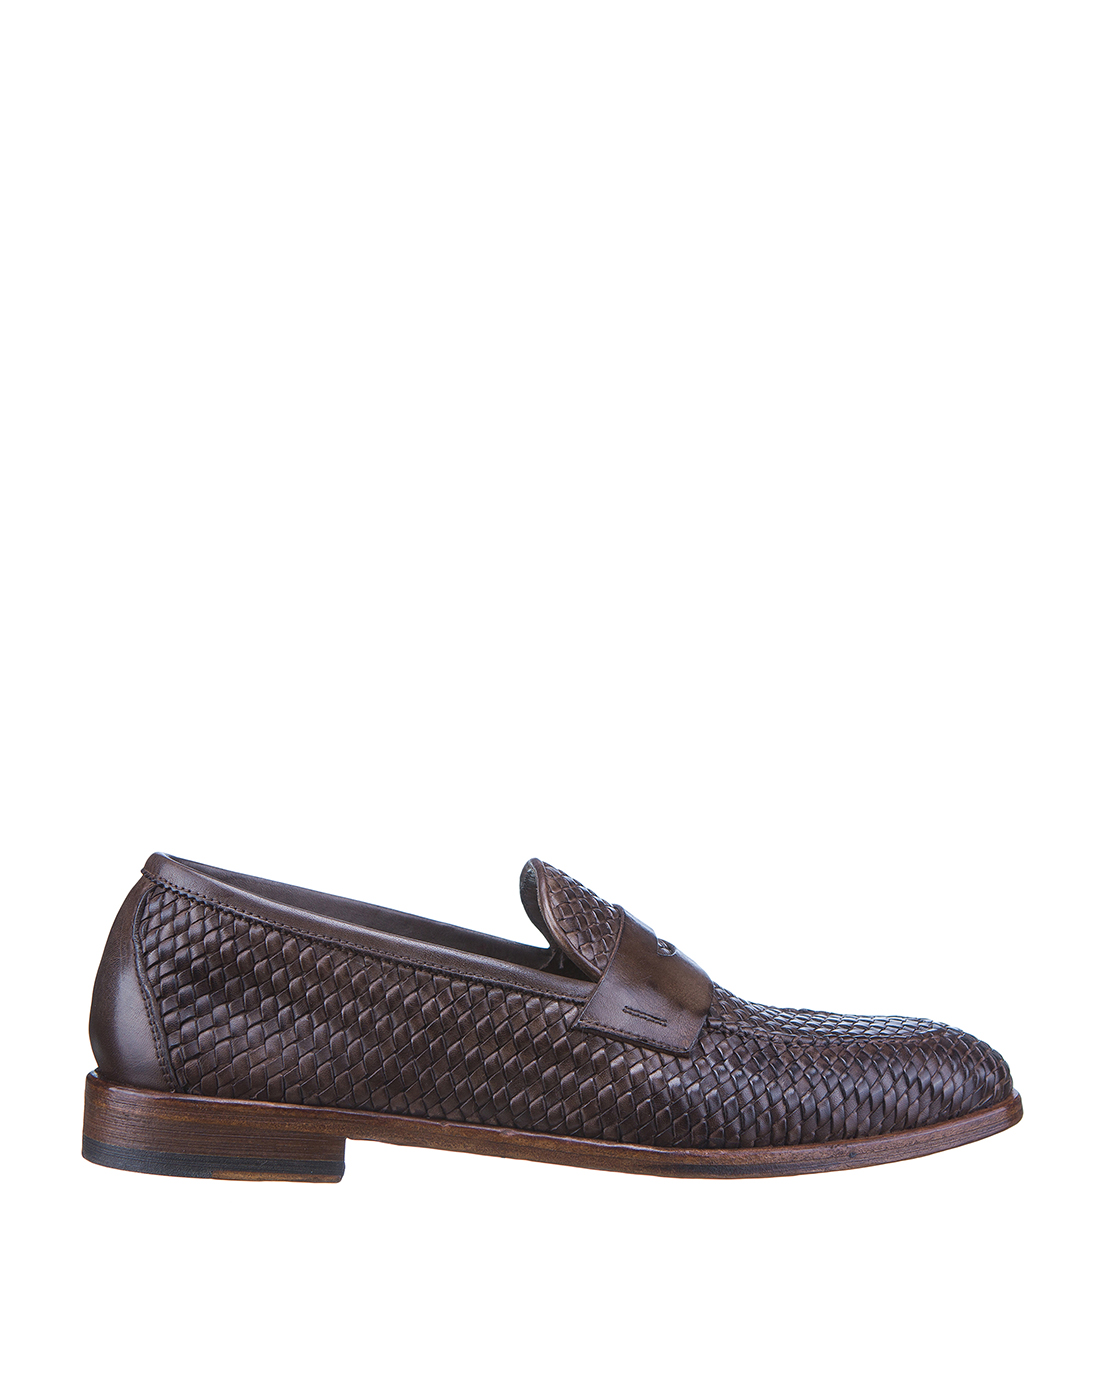 Туфли коричневые мужские Brecos S9507 BROWN-1